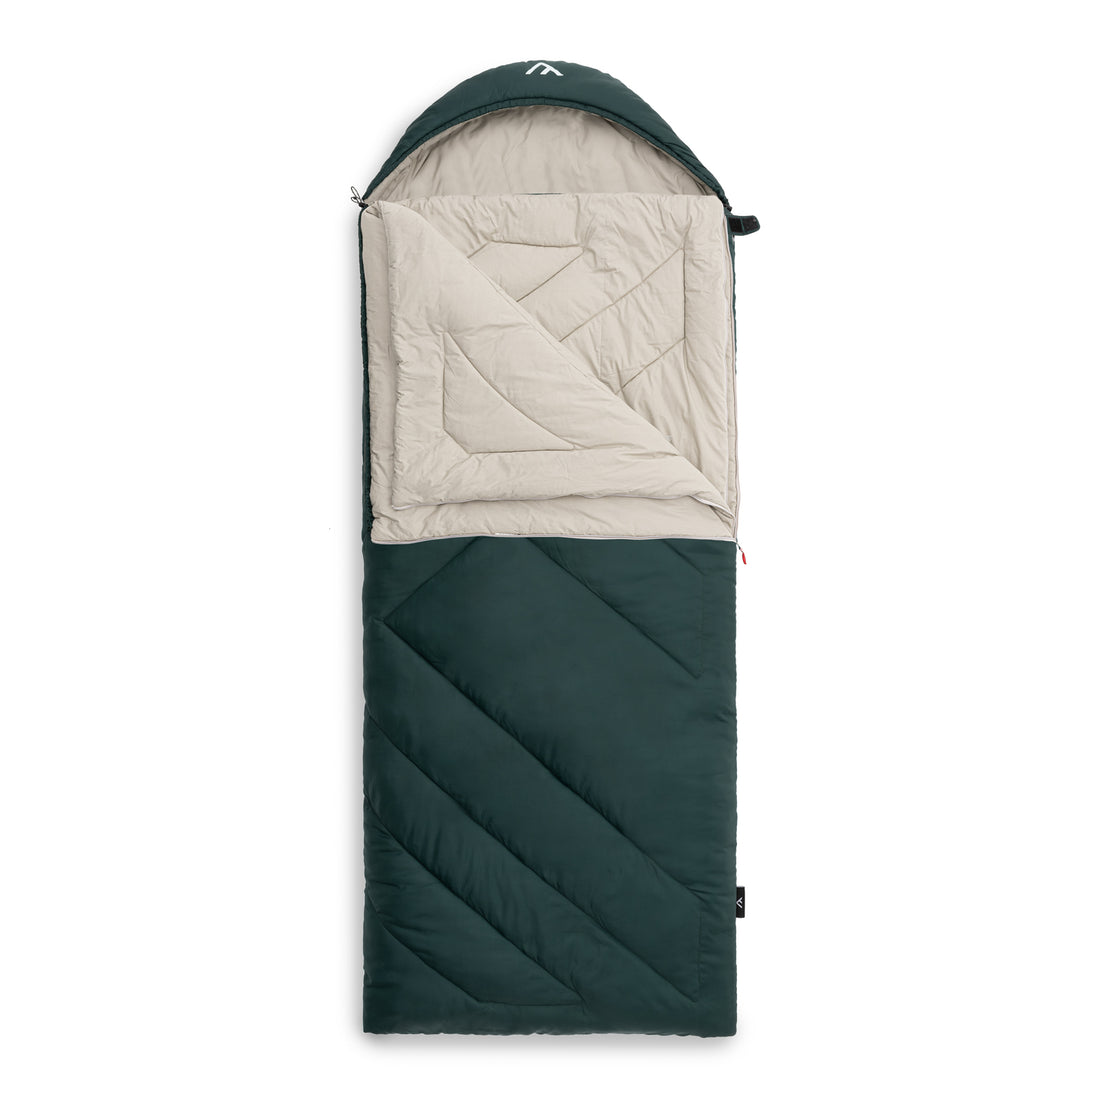 qeedo sleeping bag Fellow, versatile sleeping bag for adults